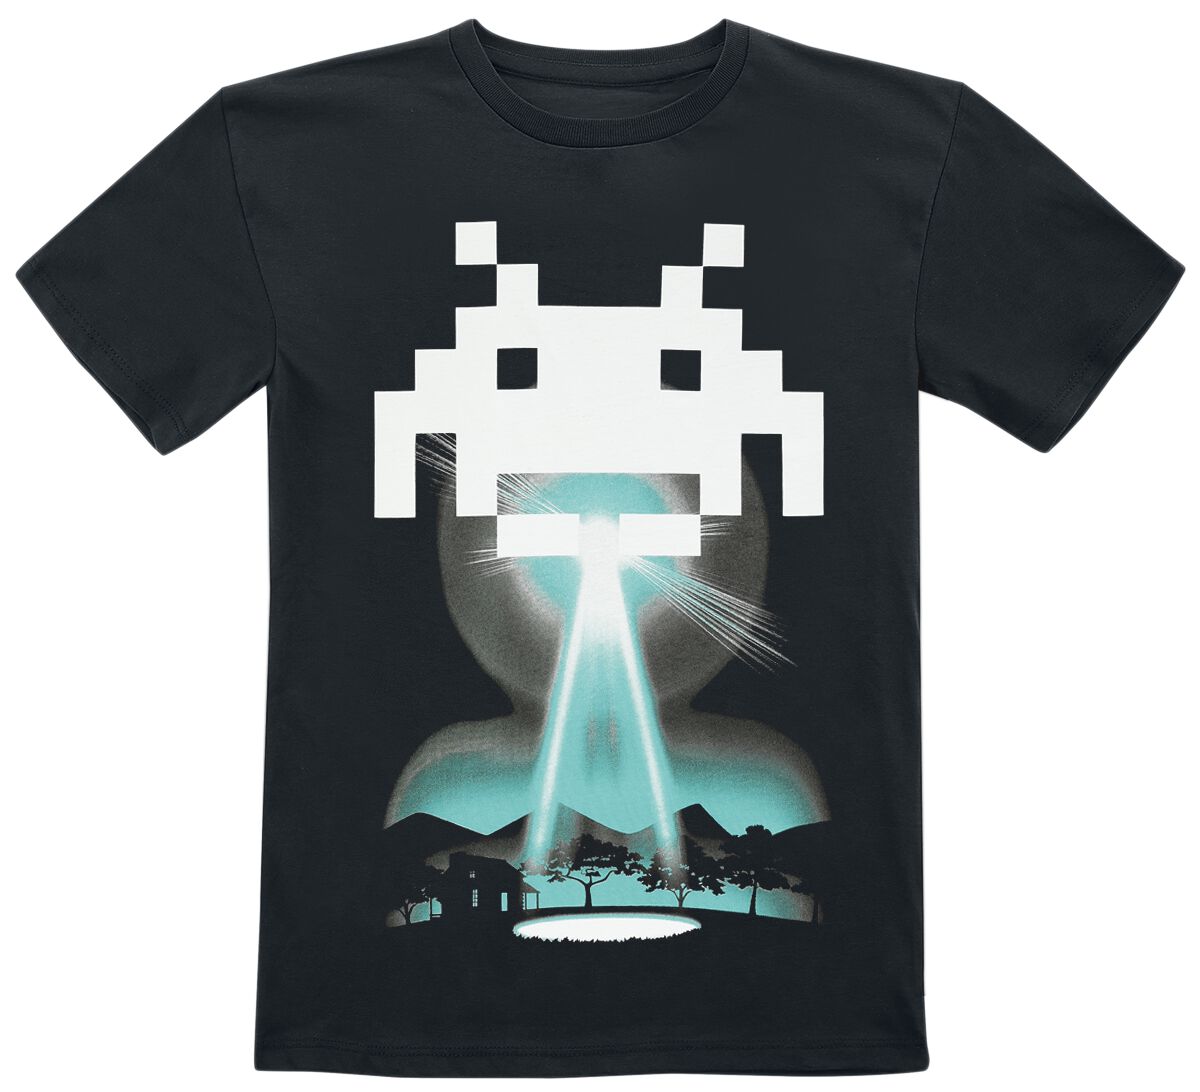 Space Invaders - Gaming T-Shirt für Kinder - Beam Me Up - für Mädchen & Jungen - schwarz  - EMP exklusives Merchandise!